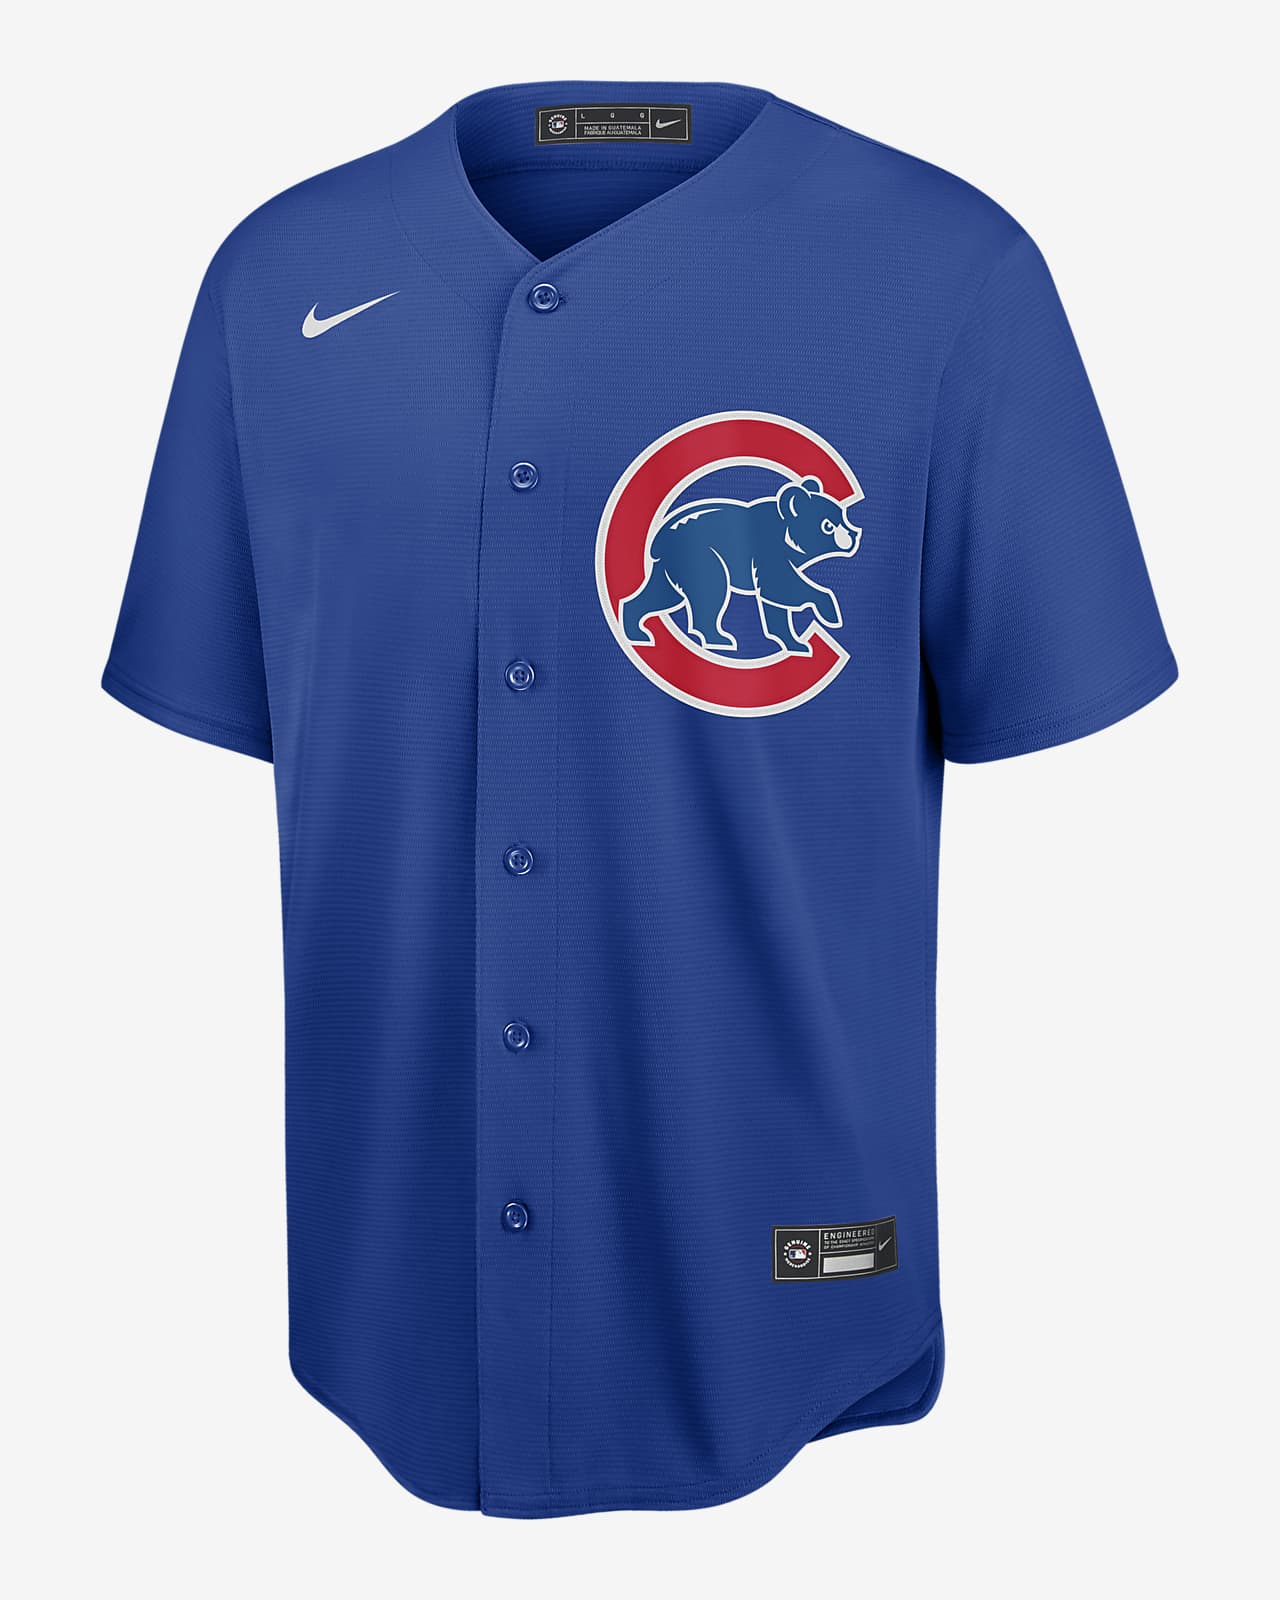 cubs baseball clothing